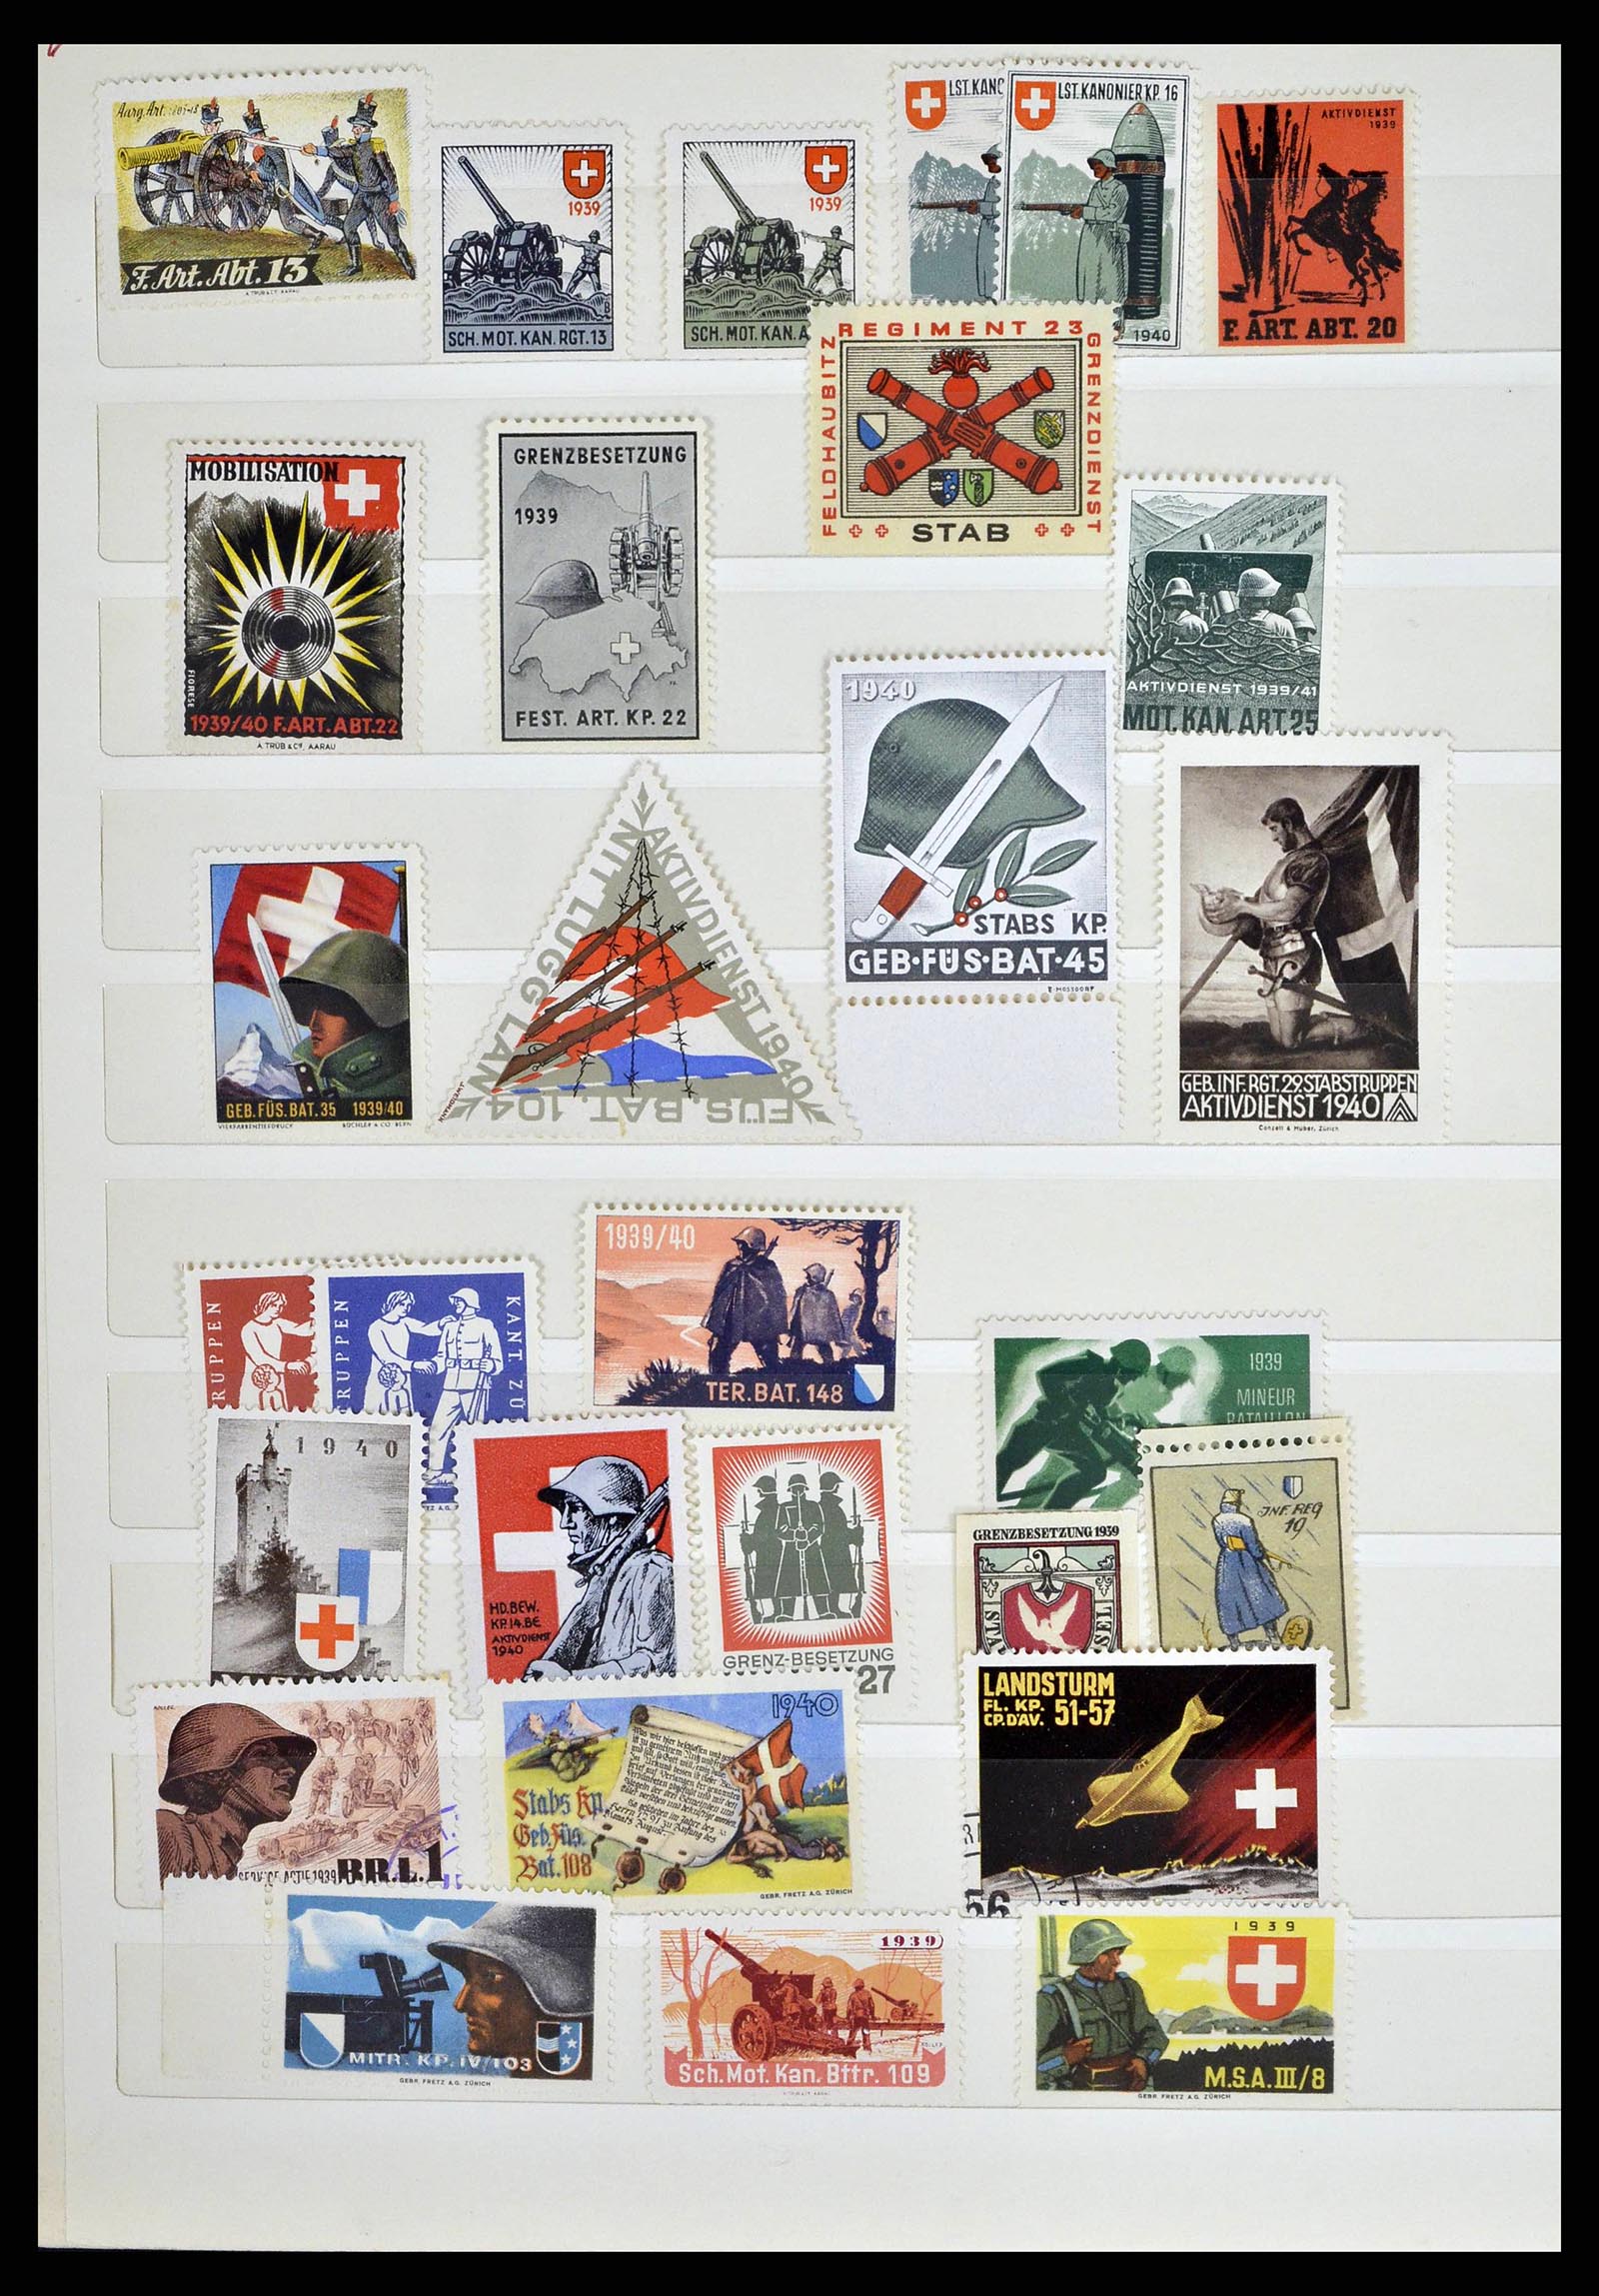 38768 0006 - Stamp collection 38768 Switzerland soldierstamps 1914-1945.